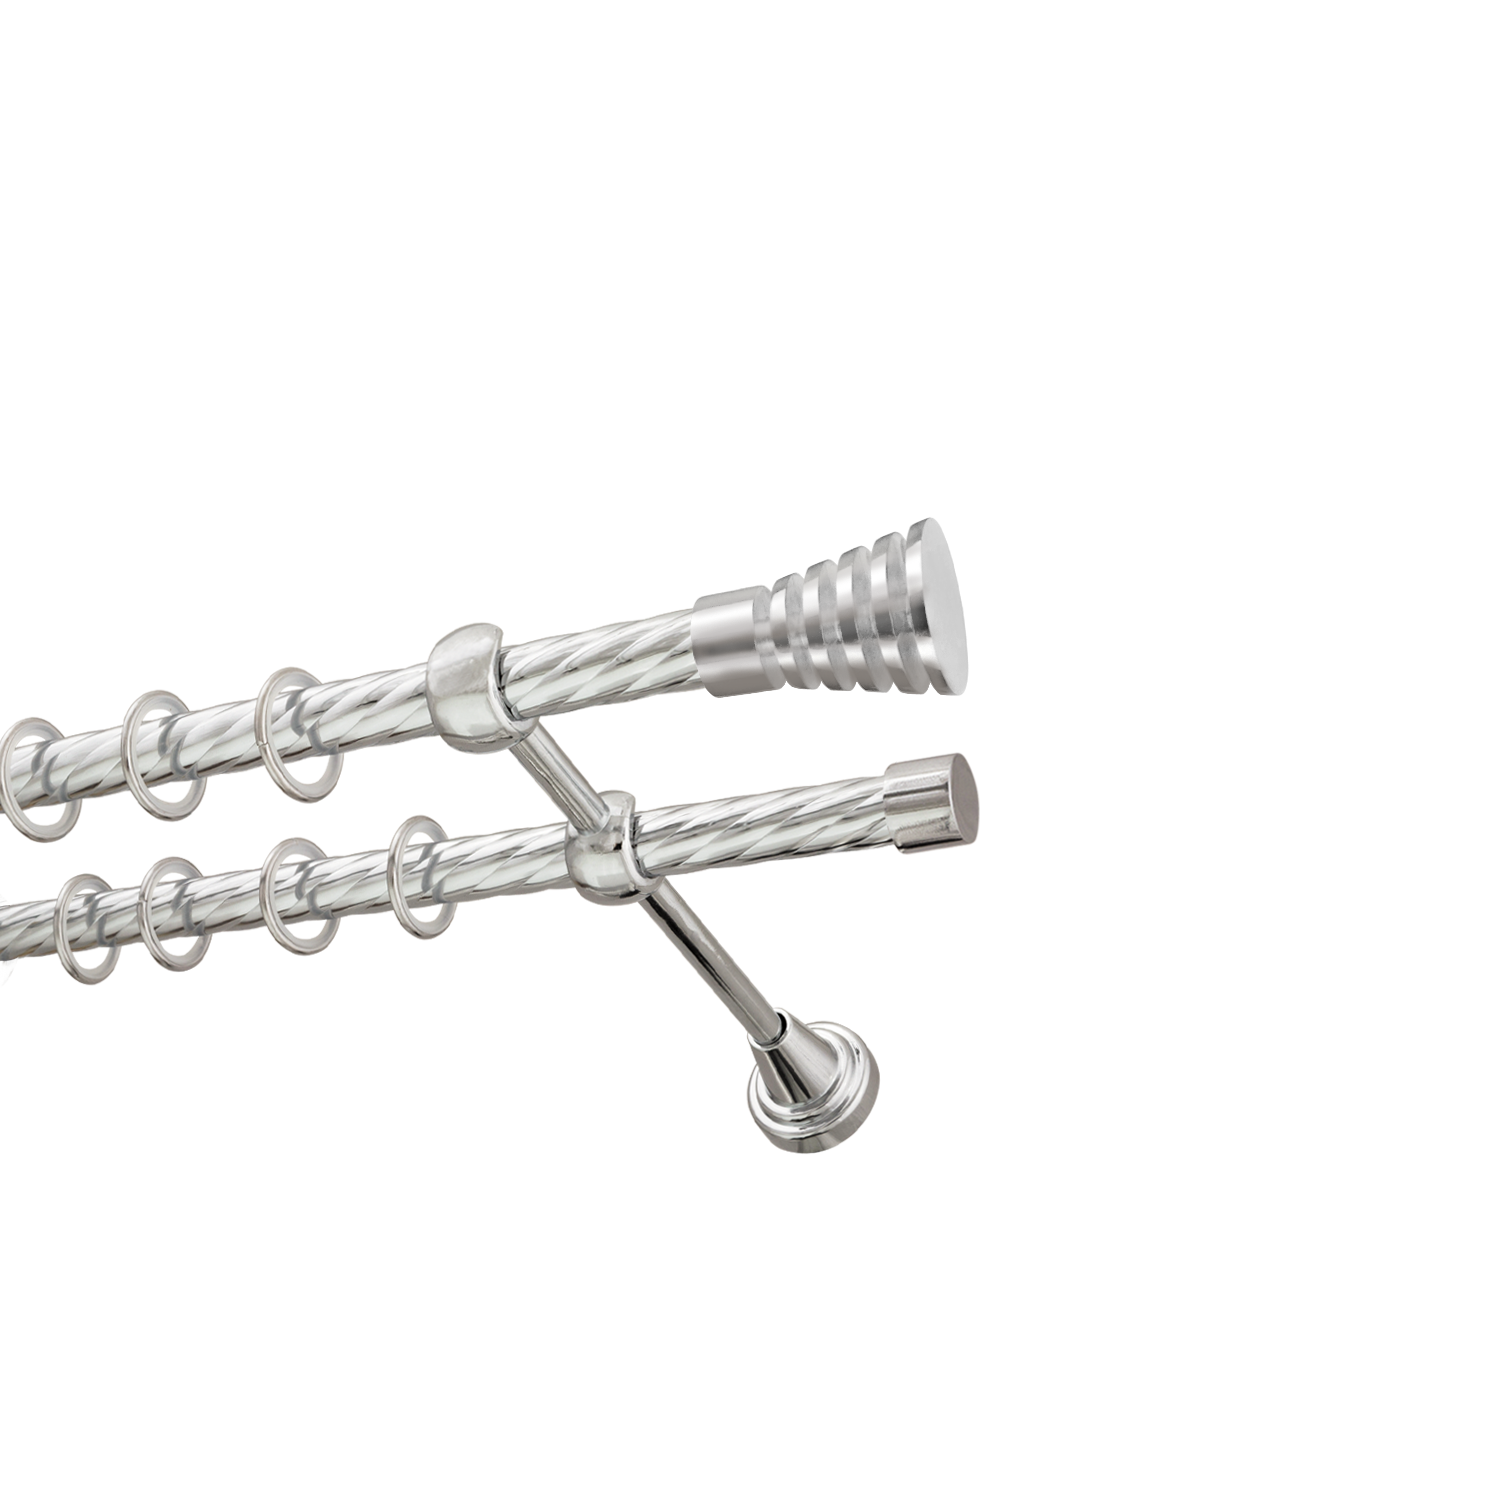 Металлический карниз для штор Верона, двухрядный 16/16 мм, серебро, витая штанга, длина 240 см